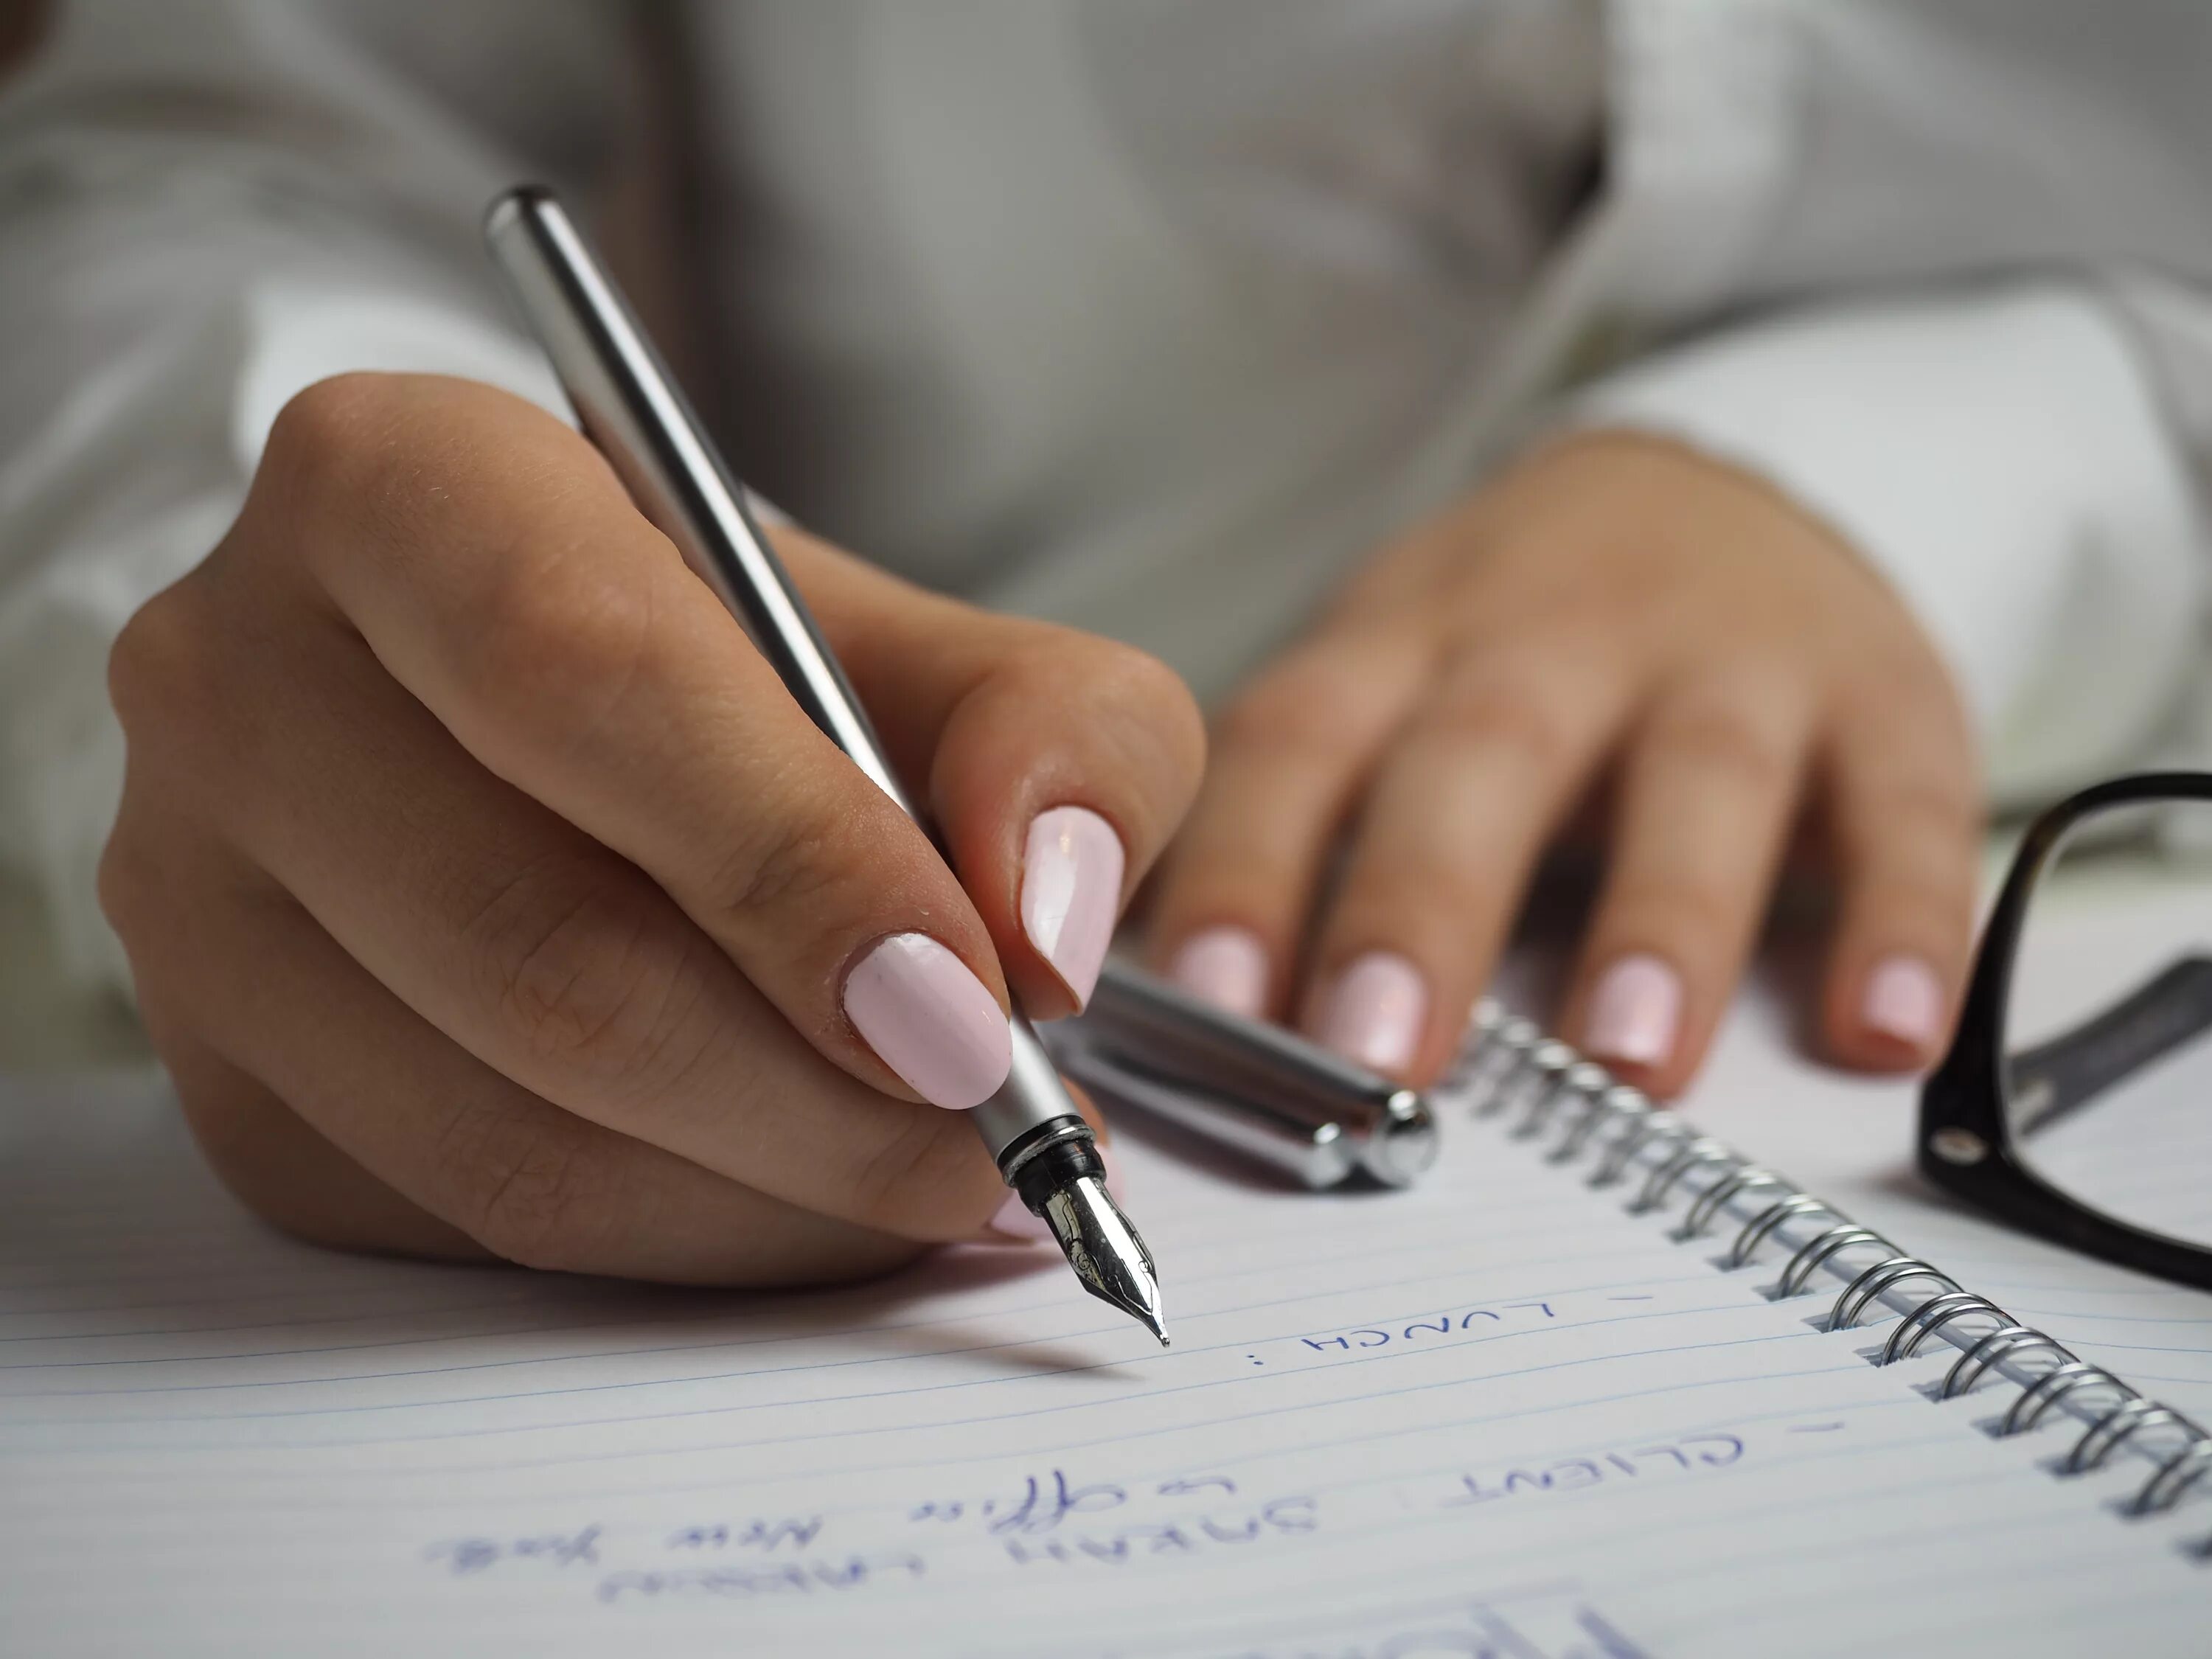 Рука с ручкой. Рука пишет ручкой. Письменная работа. Женская рука с ручкой.